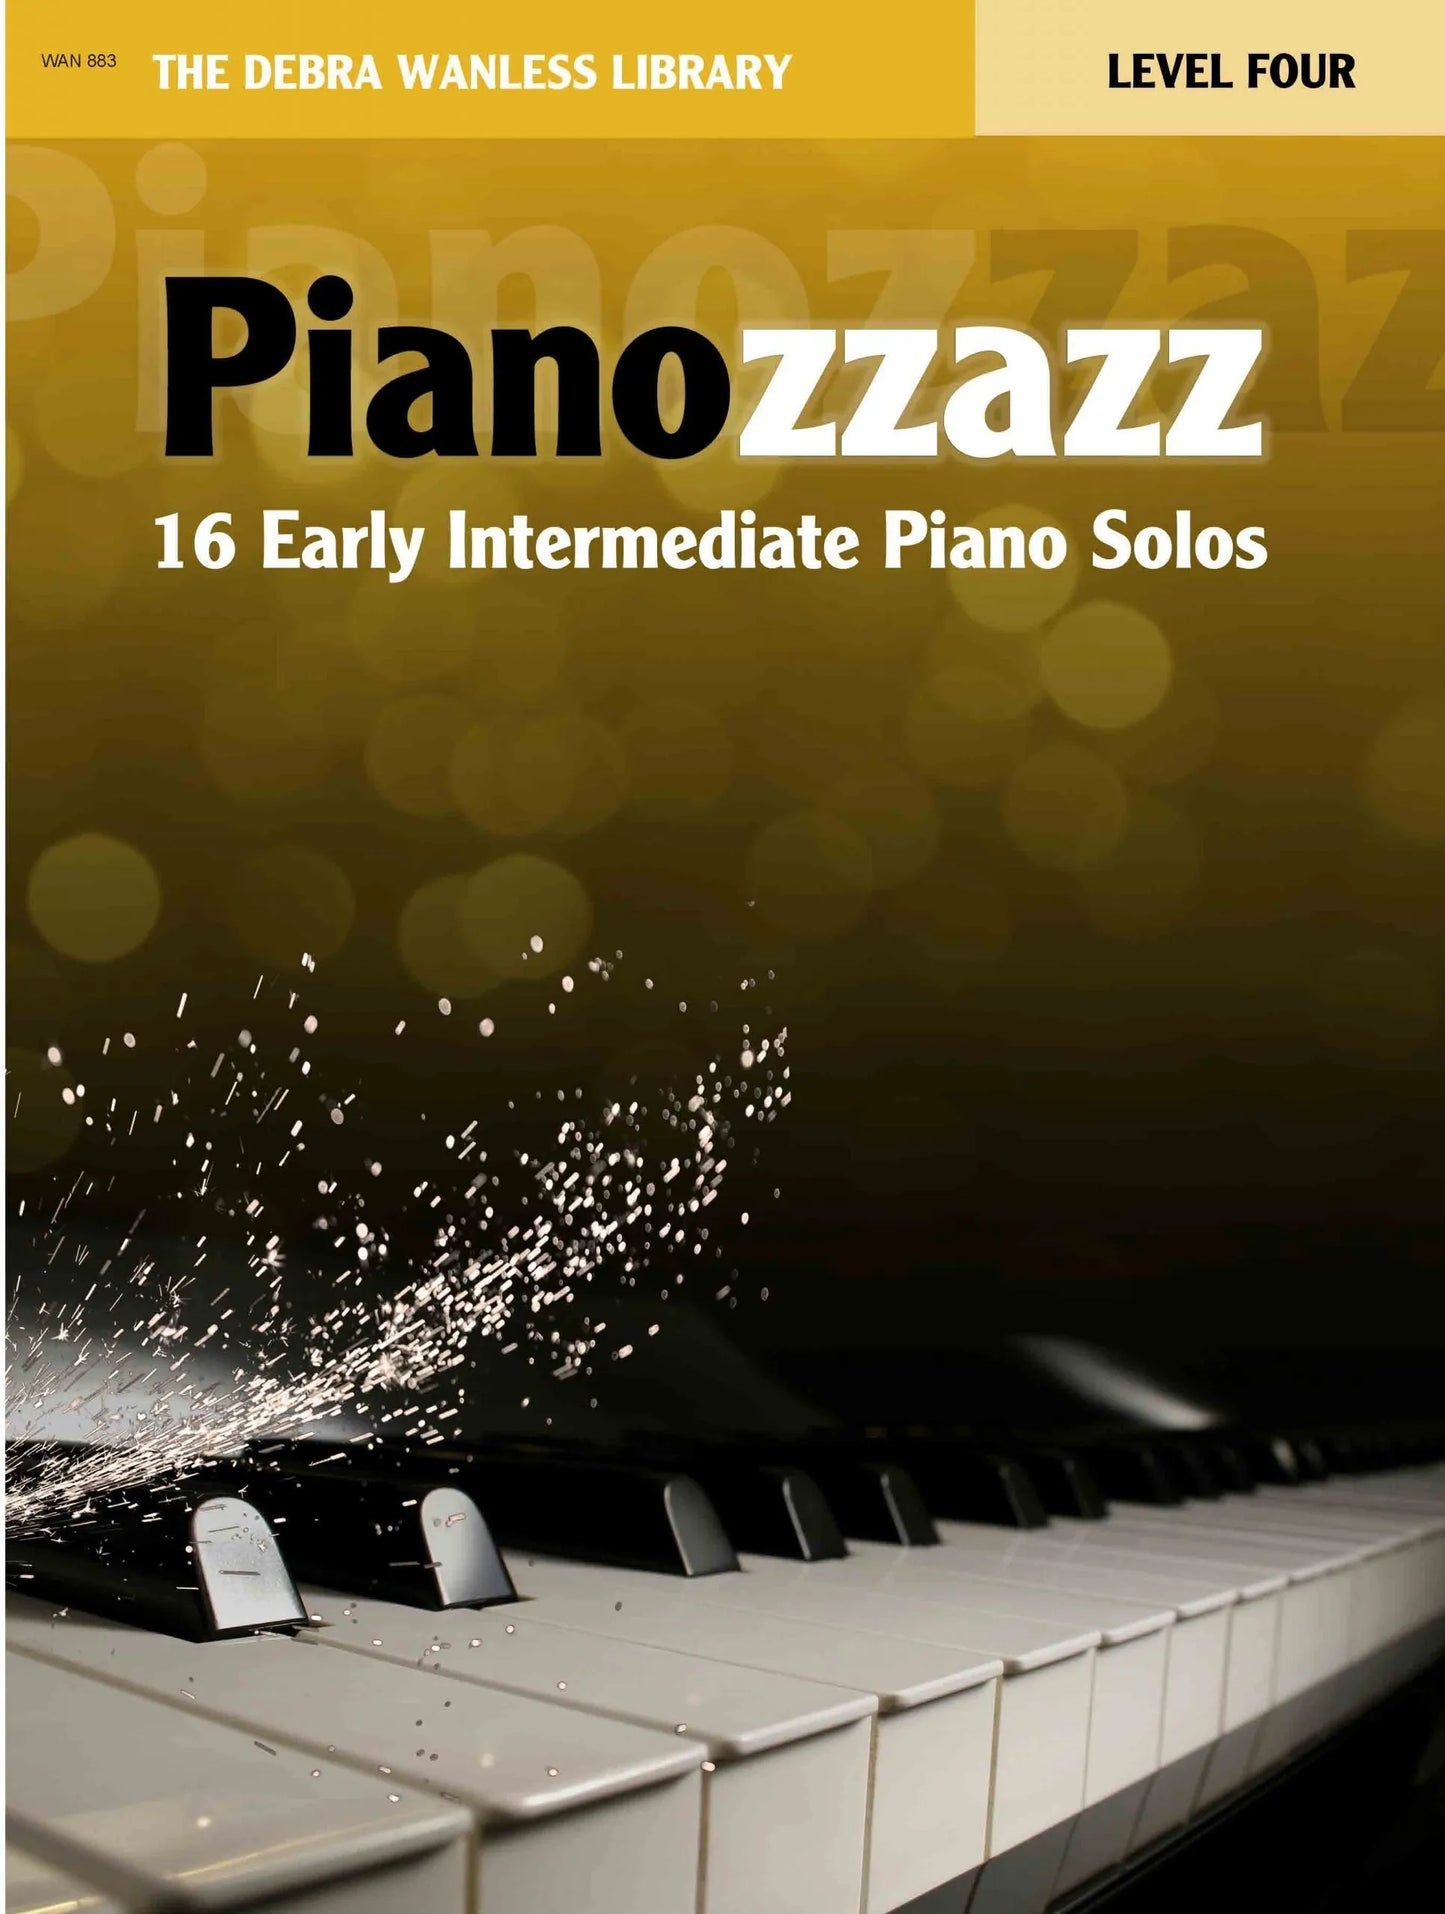 Pianozzazz Level Four